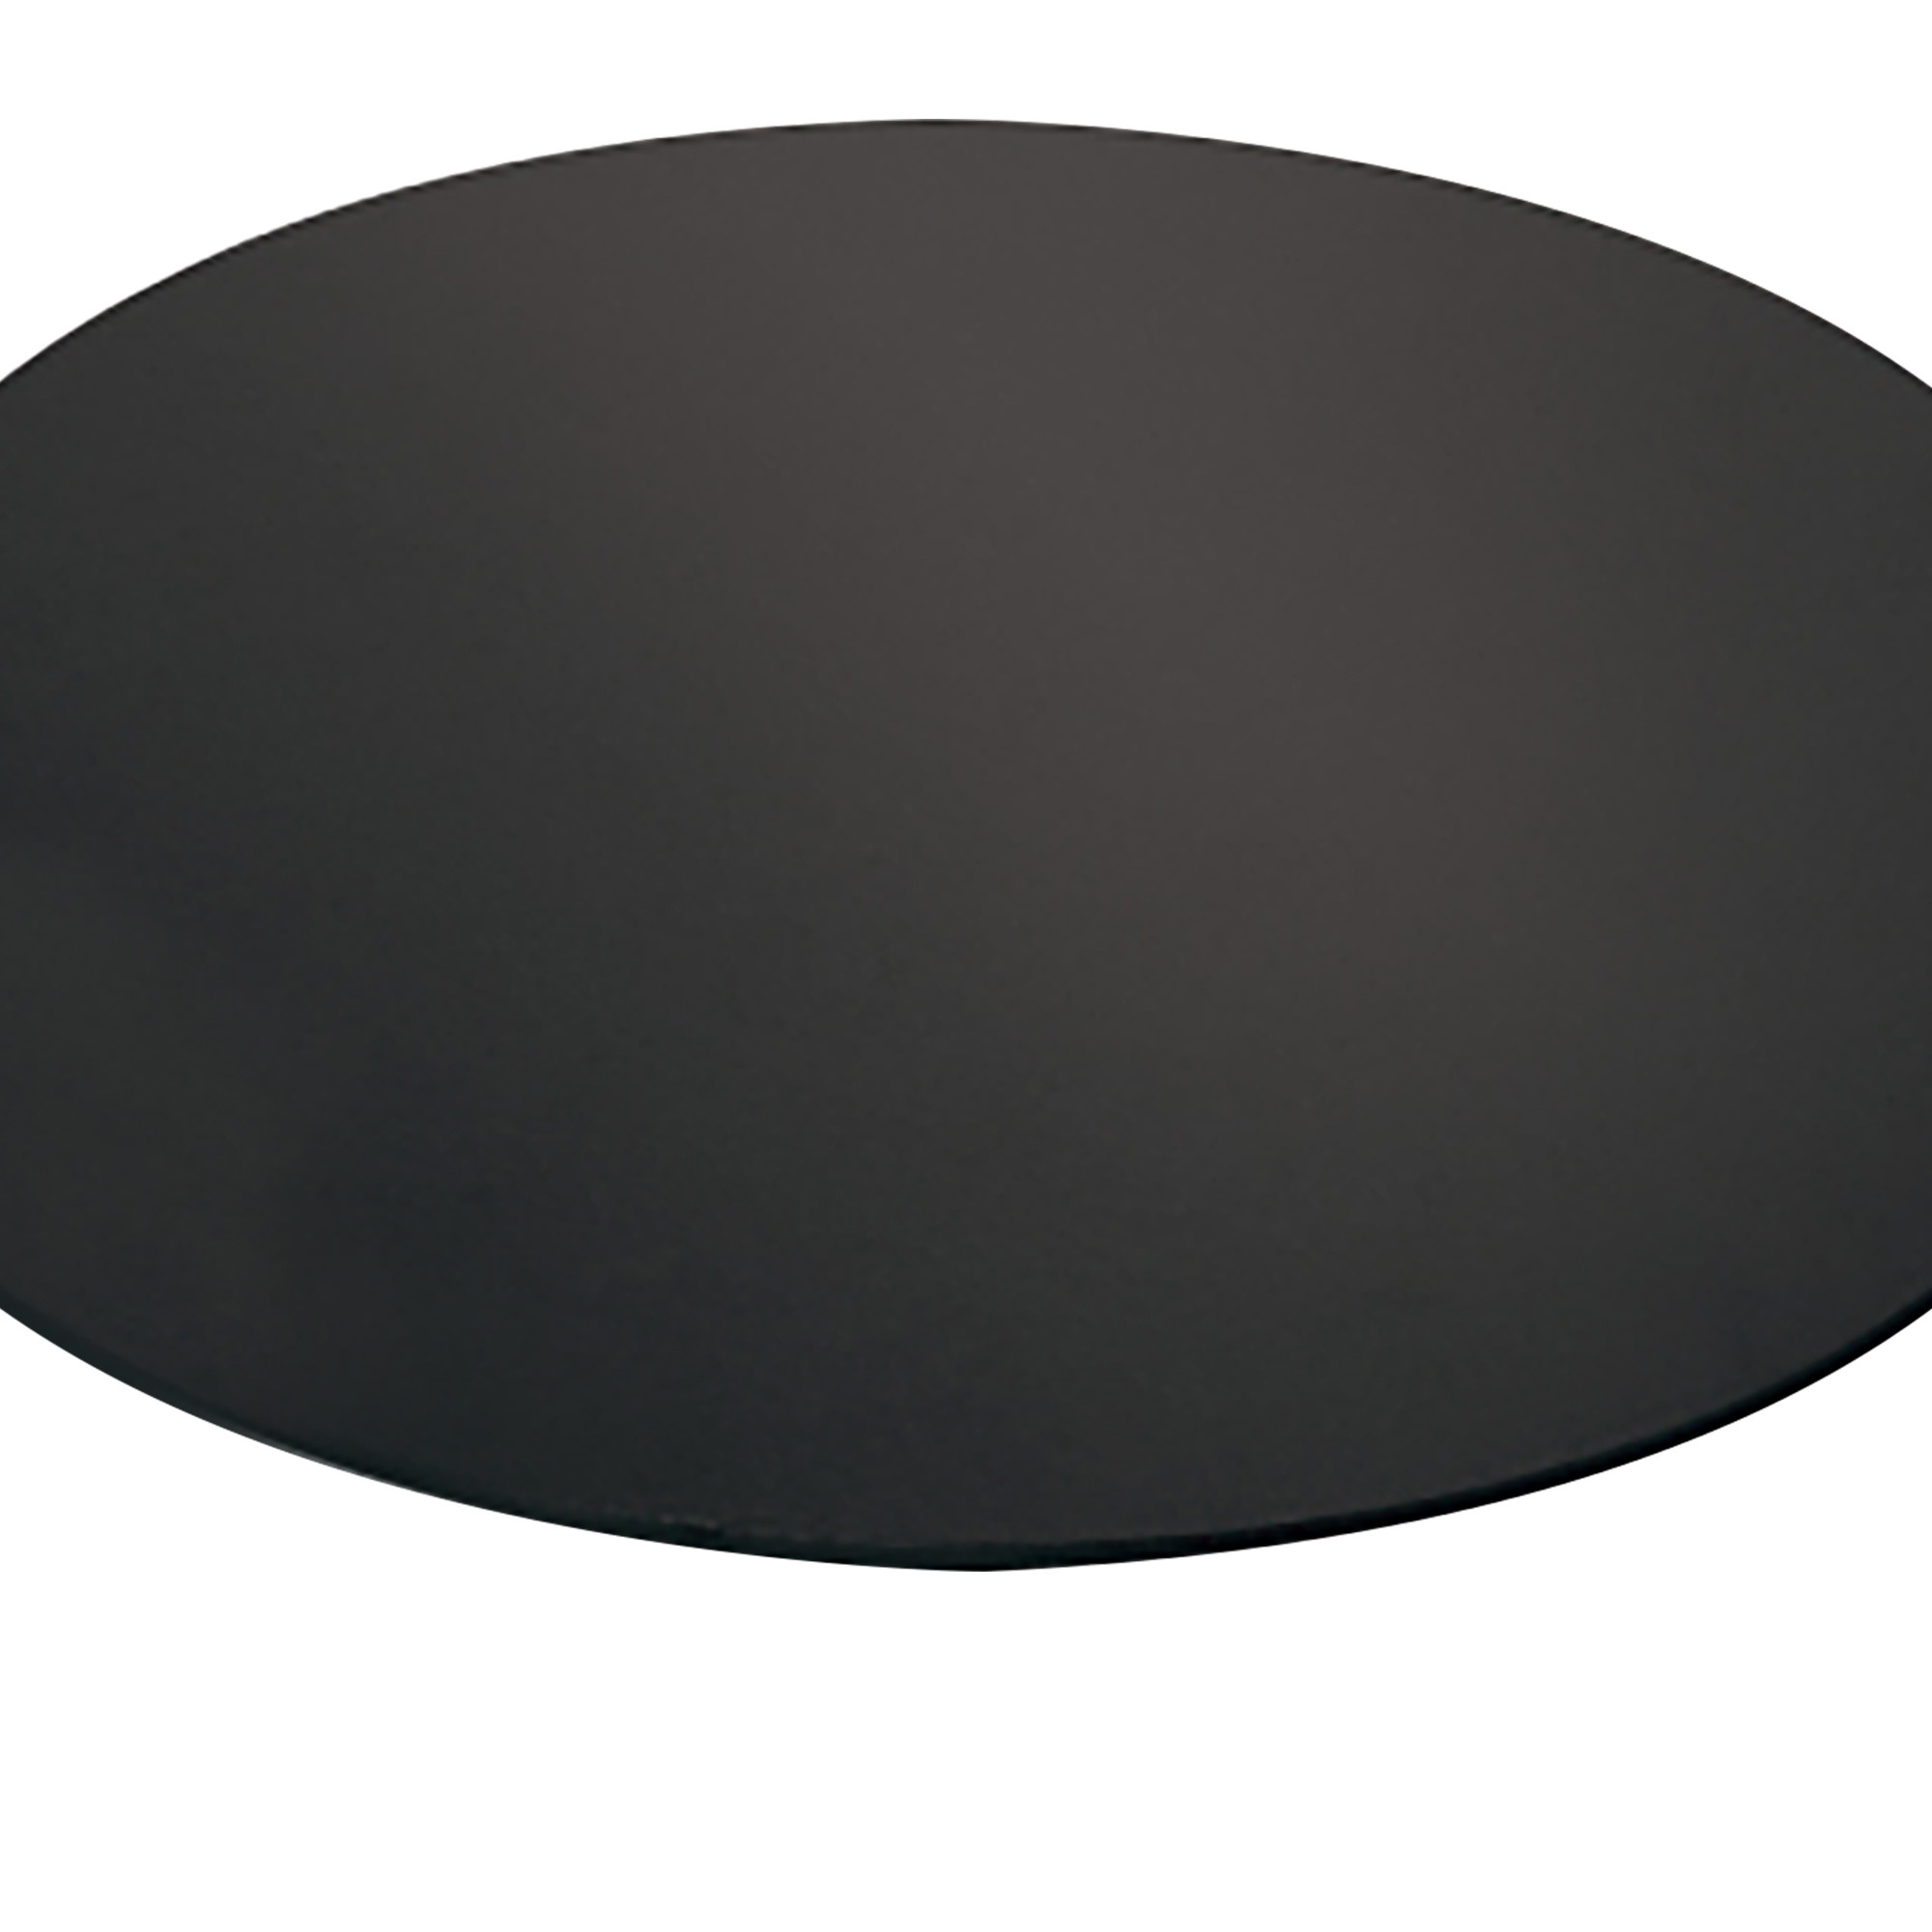 Mondo Round Cake Board 20cm Black Image 2